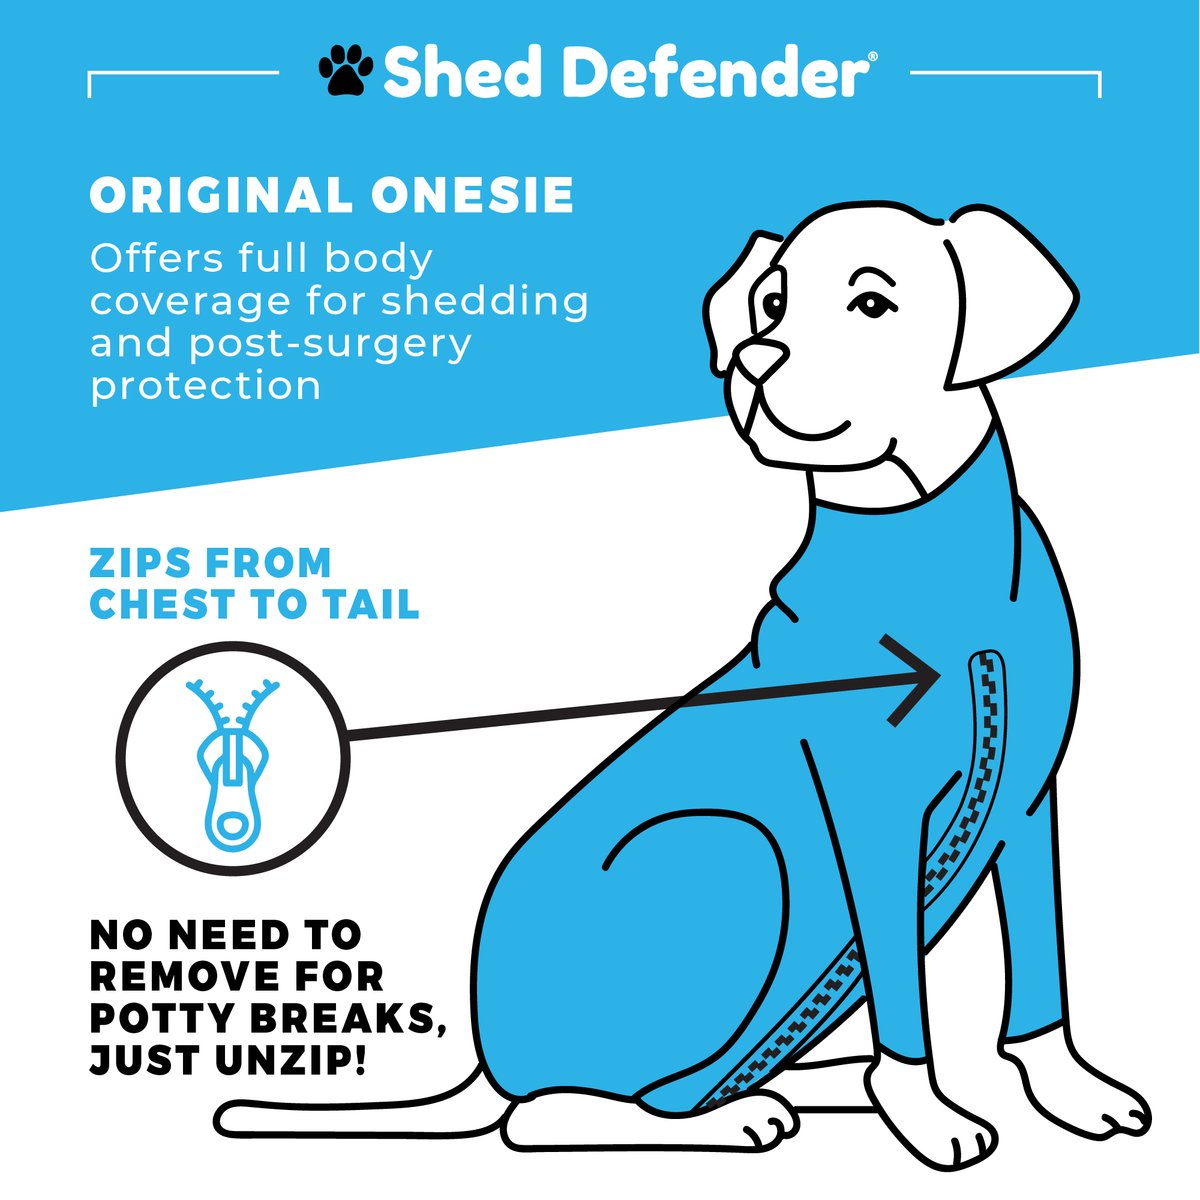 Shed Defender Original